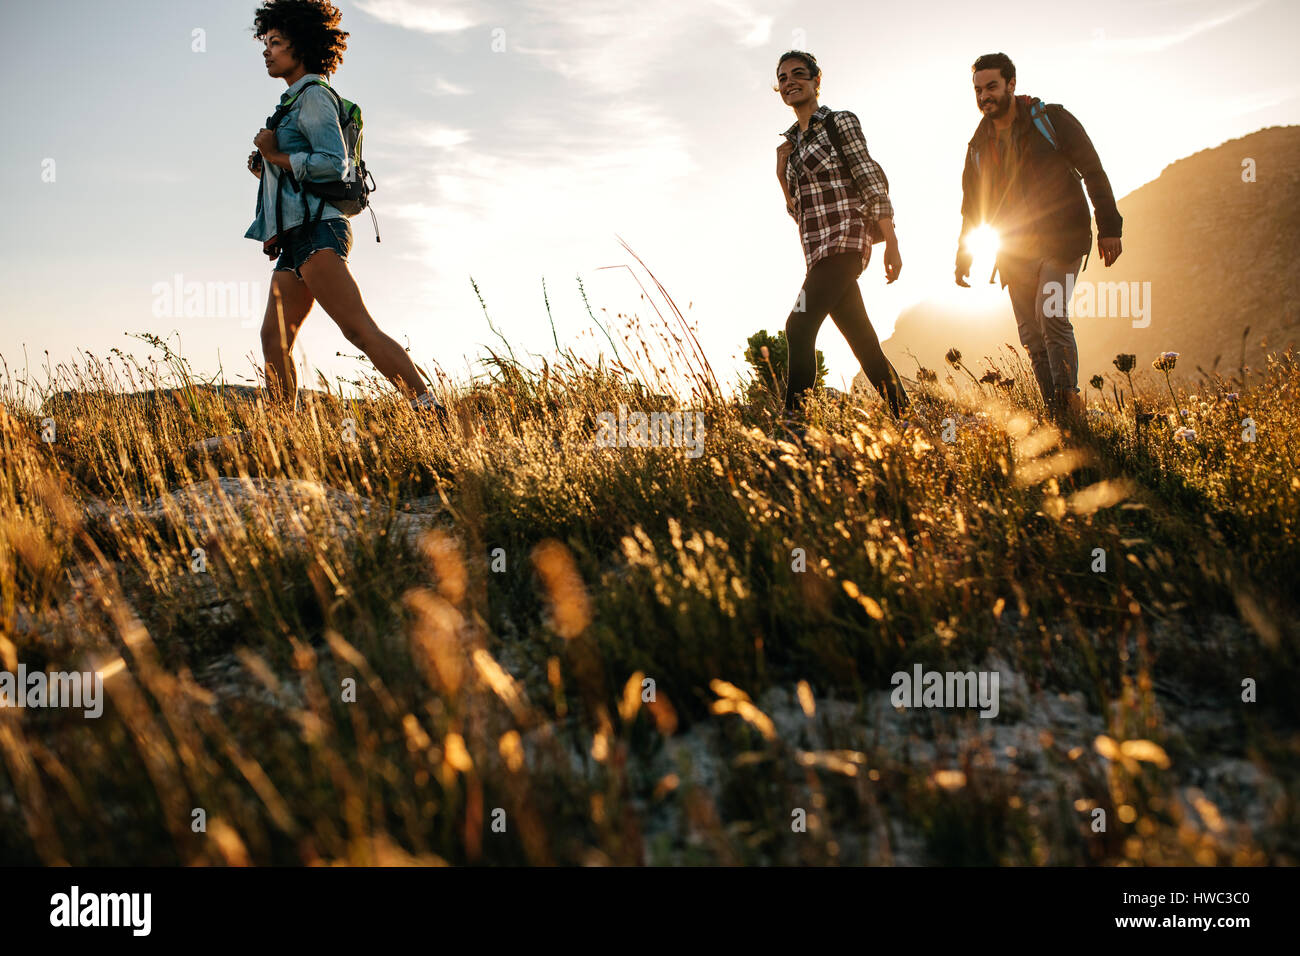 Drei junge Freunde auf ein Land gehen. Gruppe von Personen, die durch die Landschaft wandern. Stockfoto